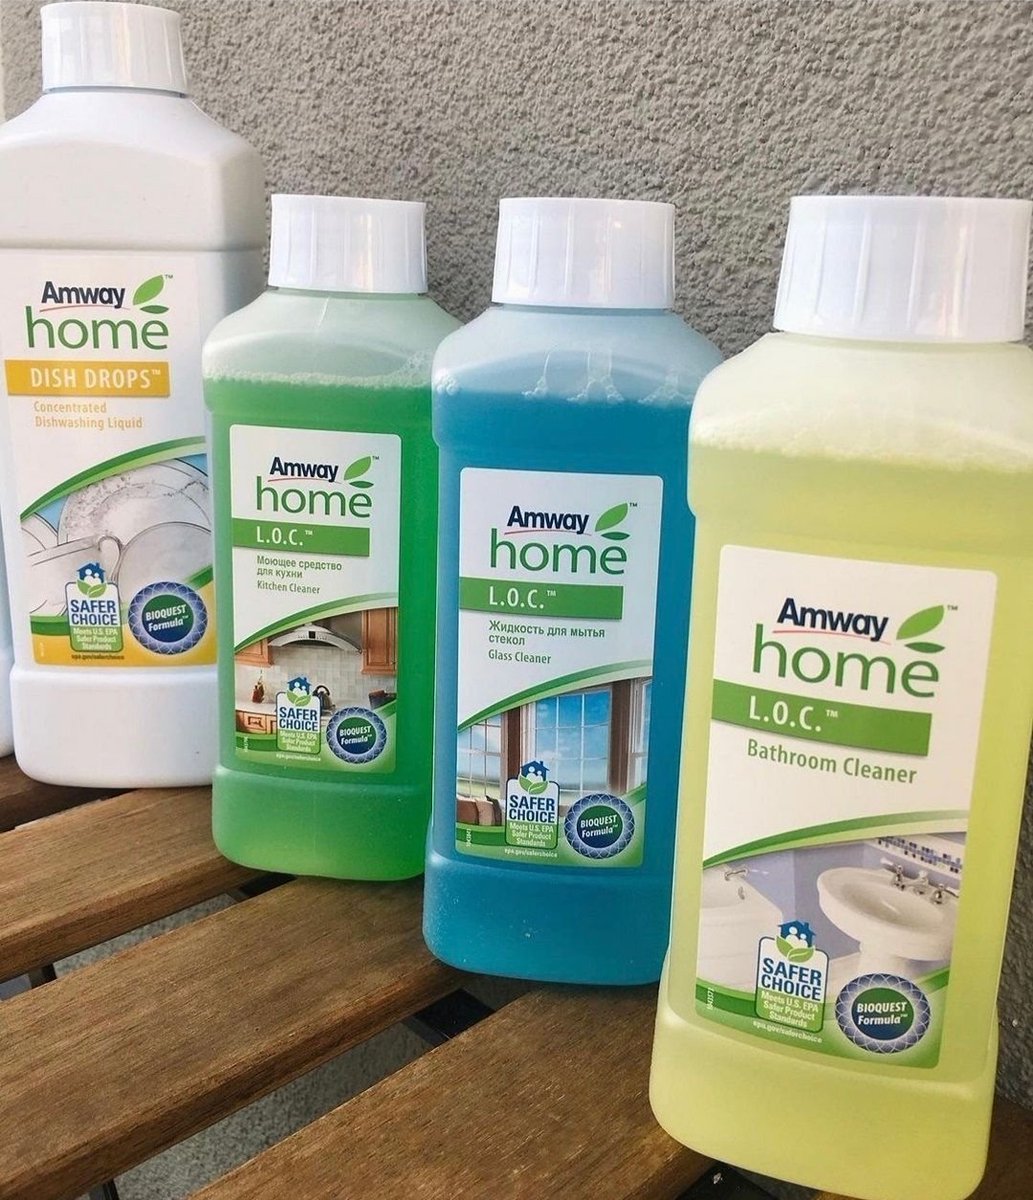 Merhabalar.. Temizliğin muhteşem dörtlüsü, ev hanımlarının herzaman destekcisi 4 ürün:) Bilgi ve sipariş için dm den iletişime gecebilirsiniz. 🍀🌿
#salı
#amway
#temizlikönerileri